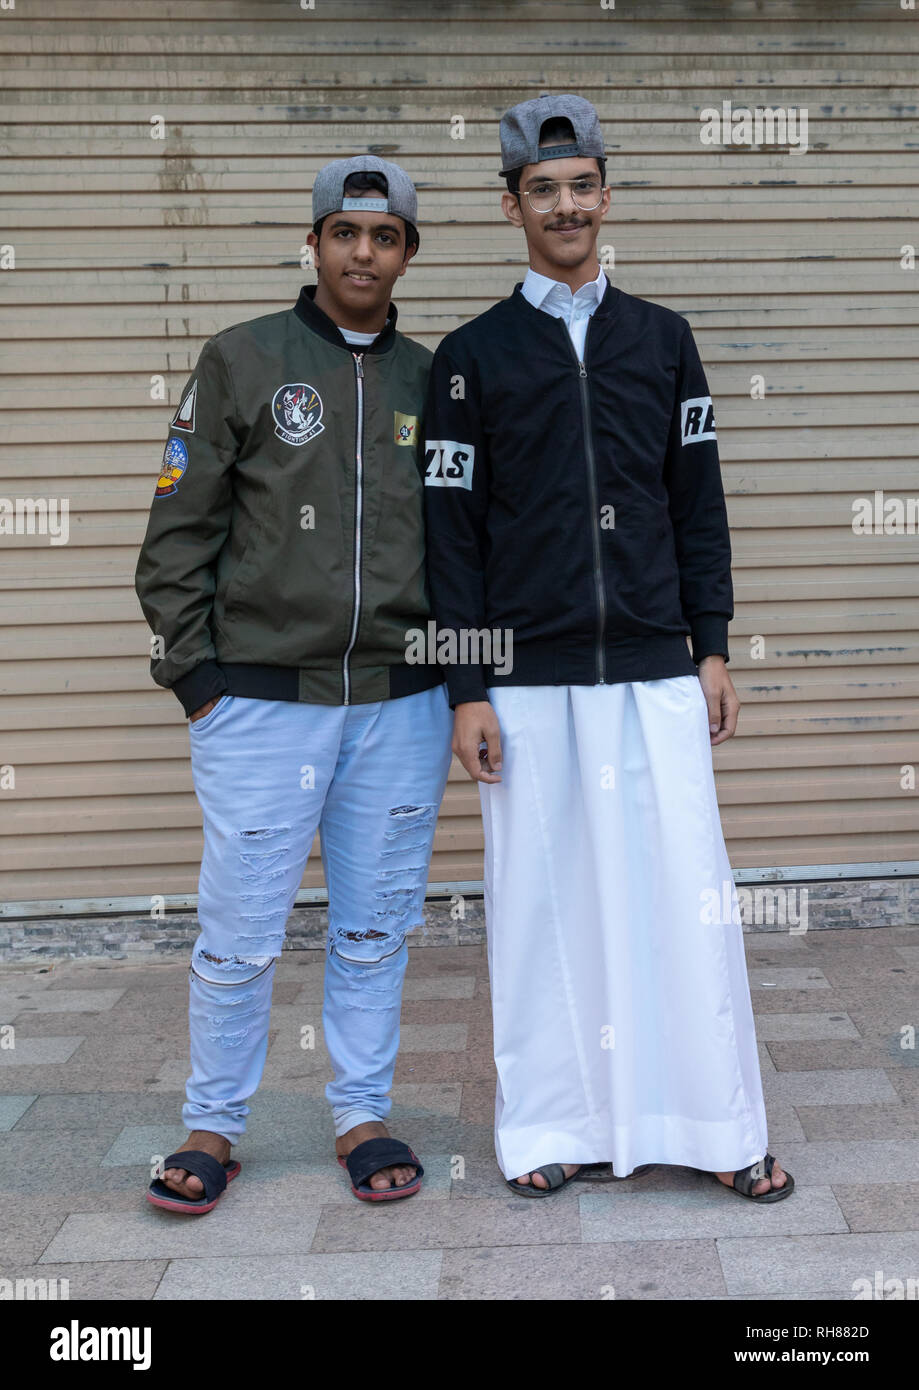 L'Arabie des adolescents portant des vêtements fashionnable, province, la Mecque, Arabie saoudite Taïf Banque D'Images